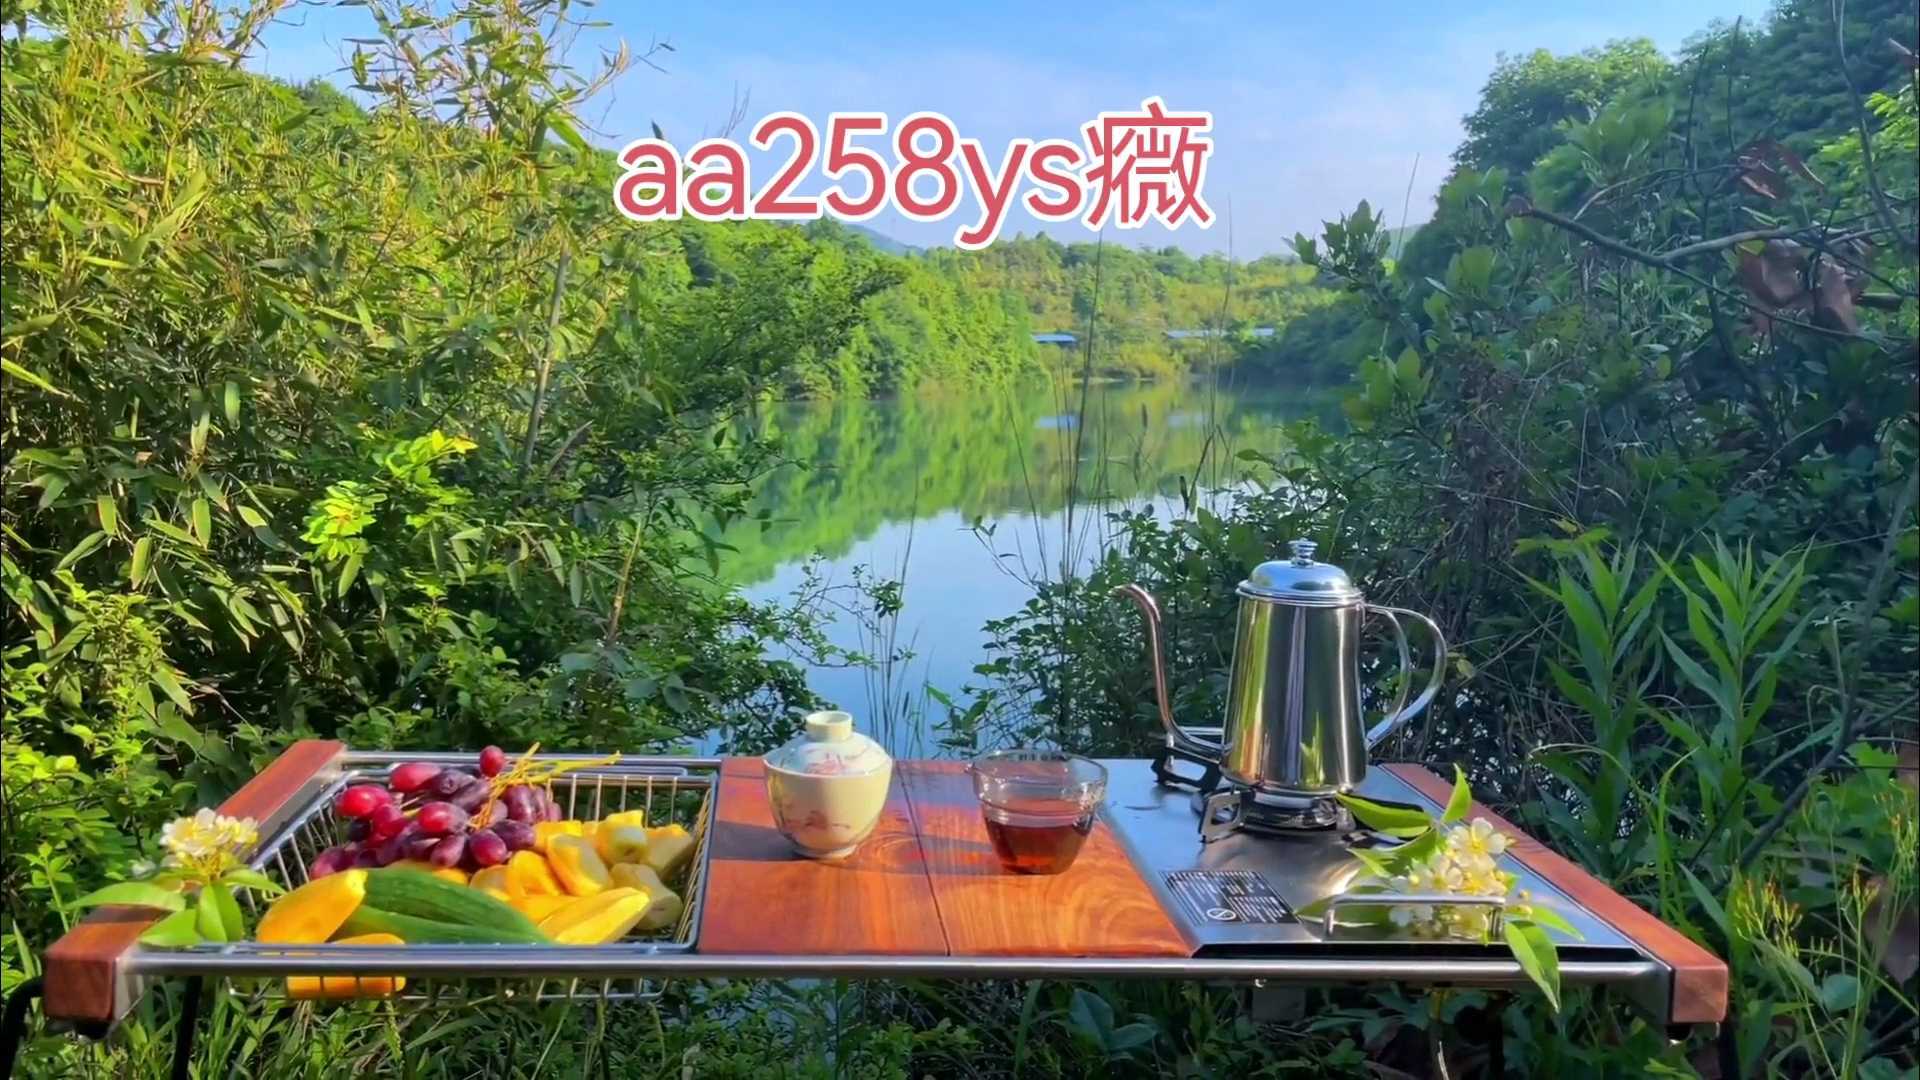 老司机分享《aa258ys》西安高端大选清雅T台海选喝茶的好地方